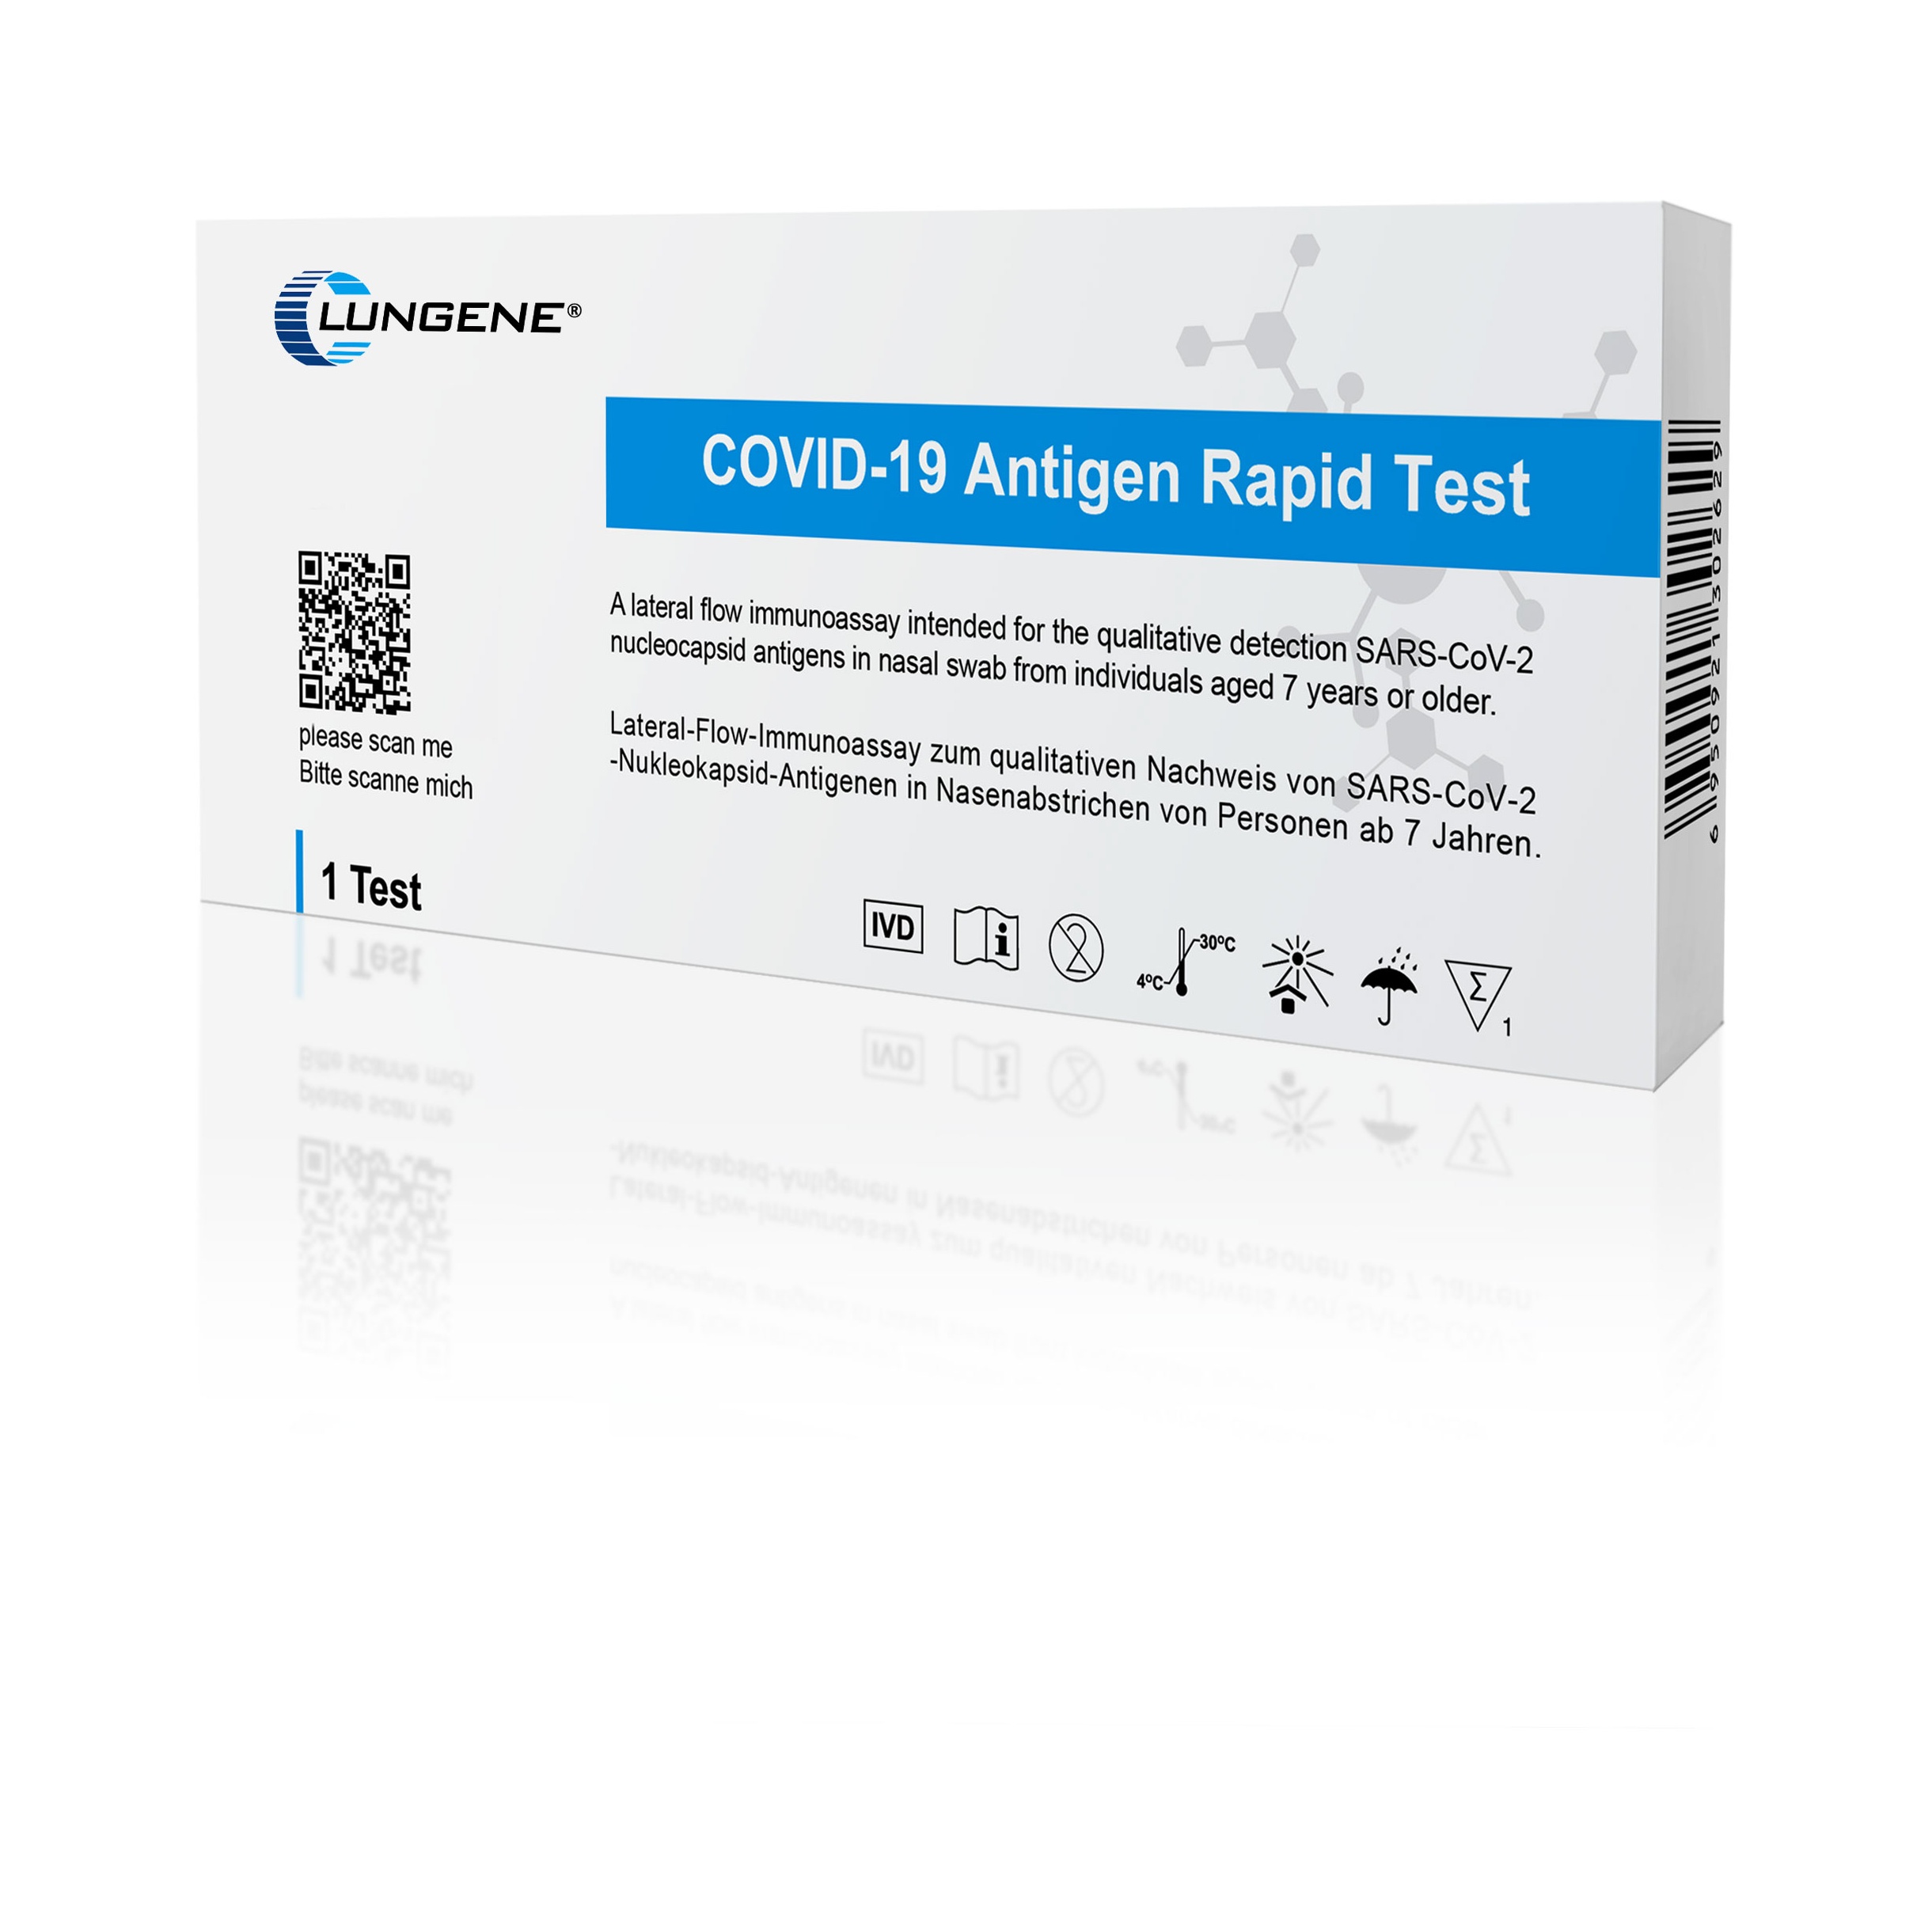 clungene covid-19 antigen rapid test